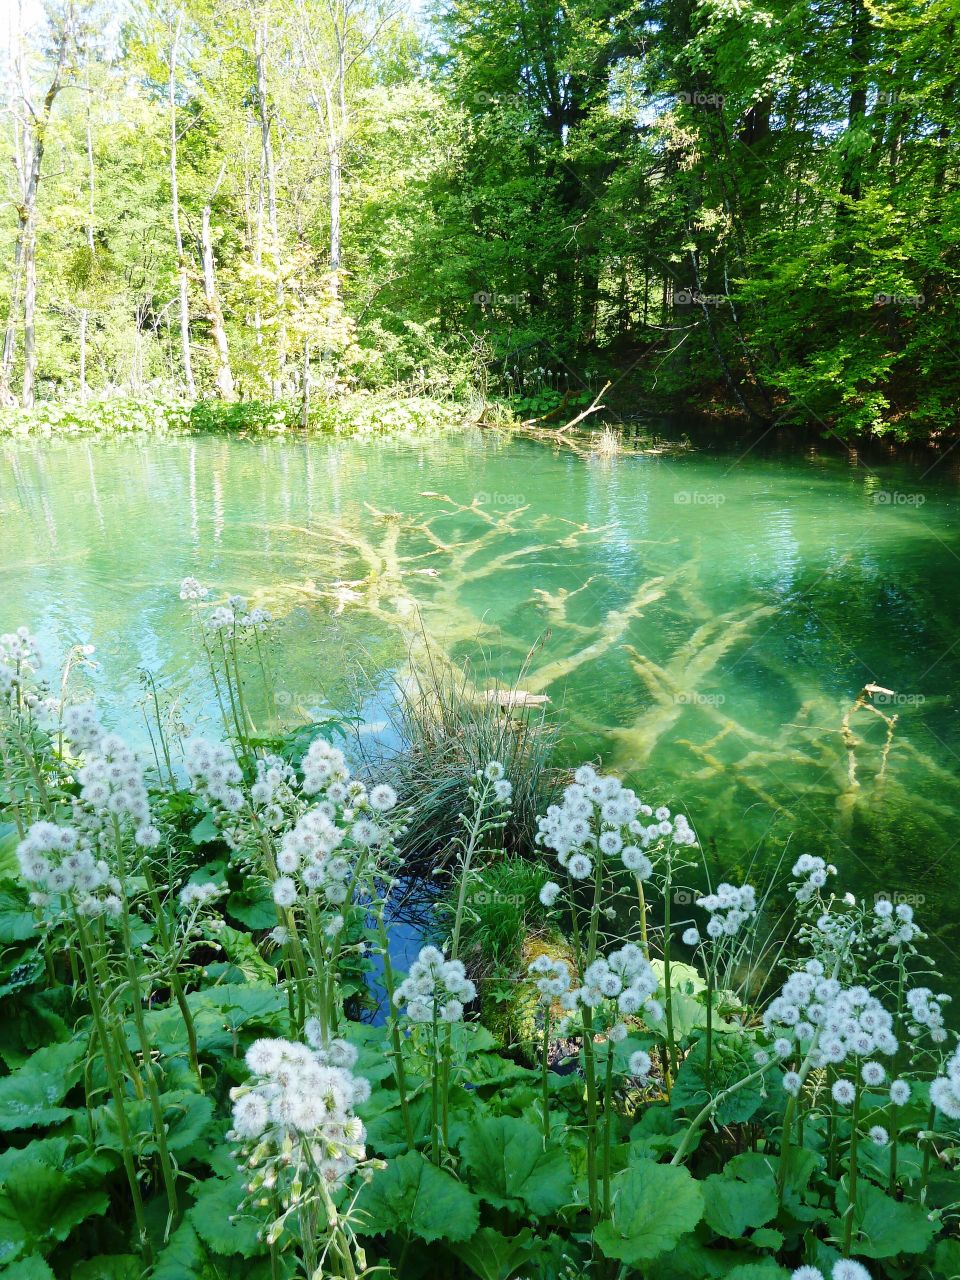 Under water flowers 